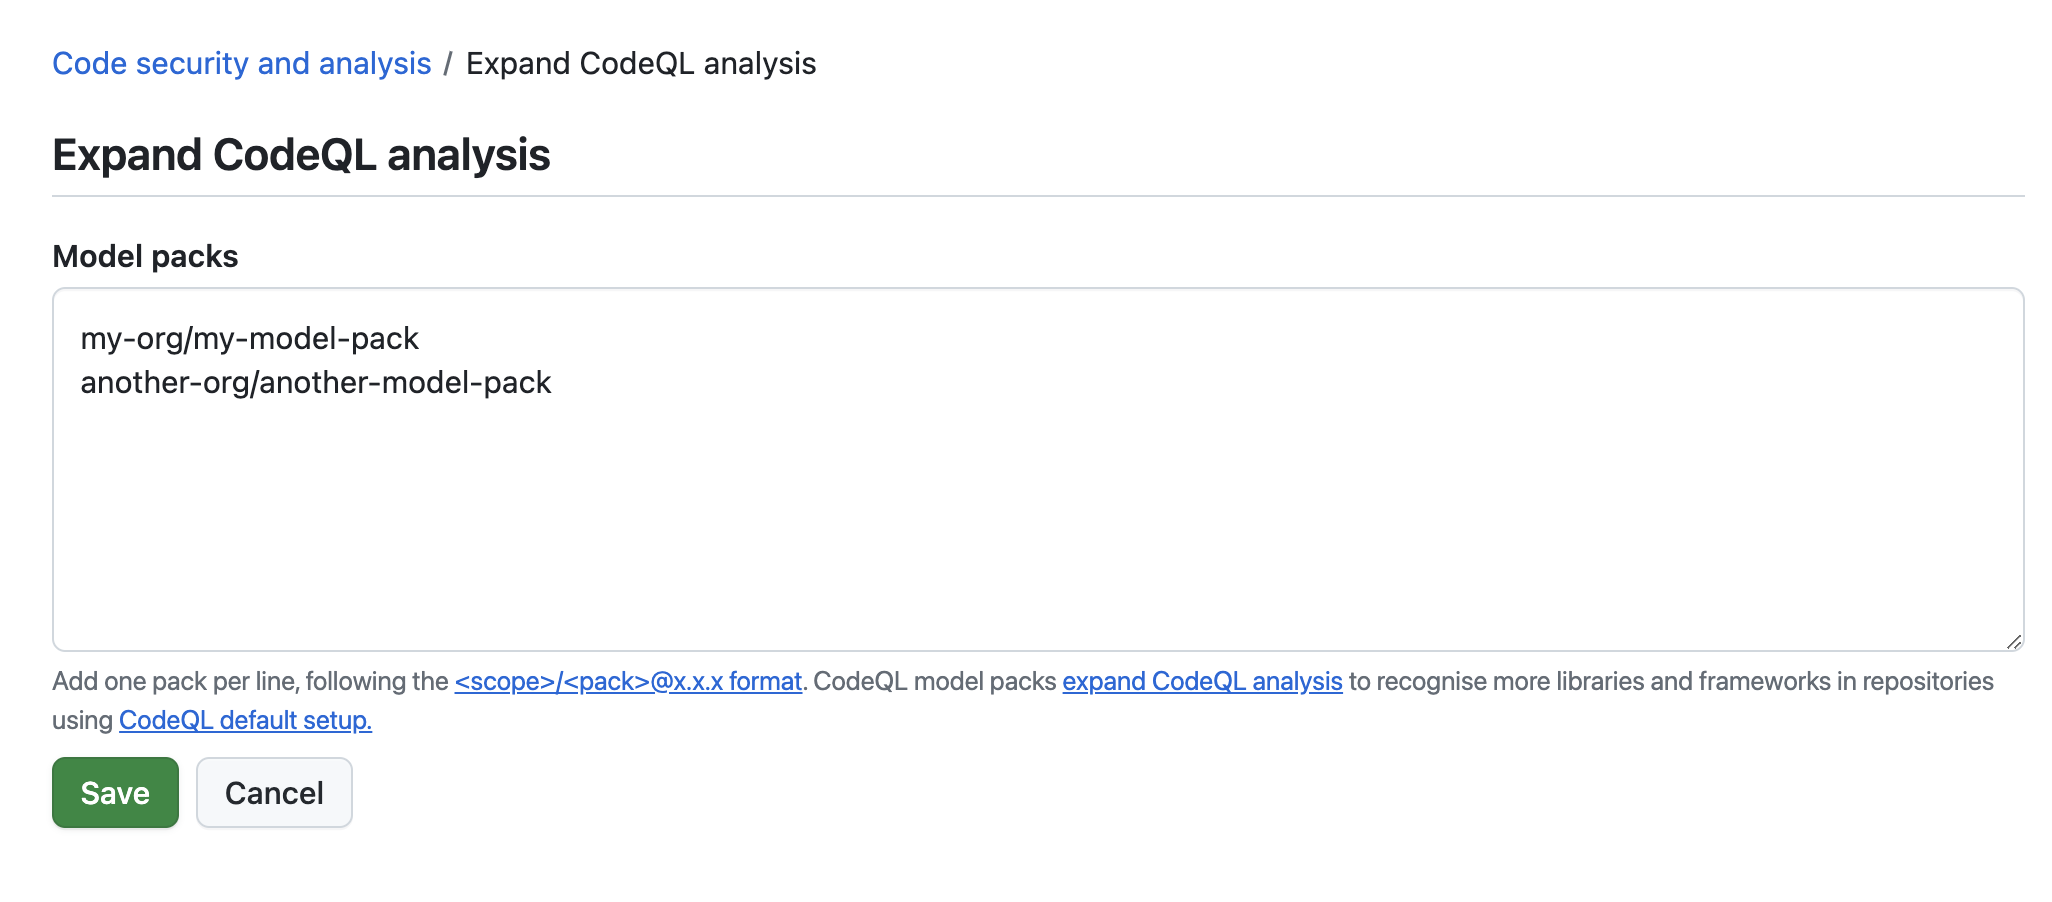 Captura de pantalla de la vista “Expandir análisis de CodeQL” en la configuración de una organización.